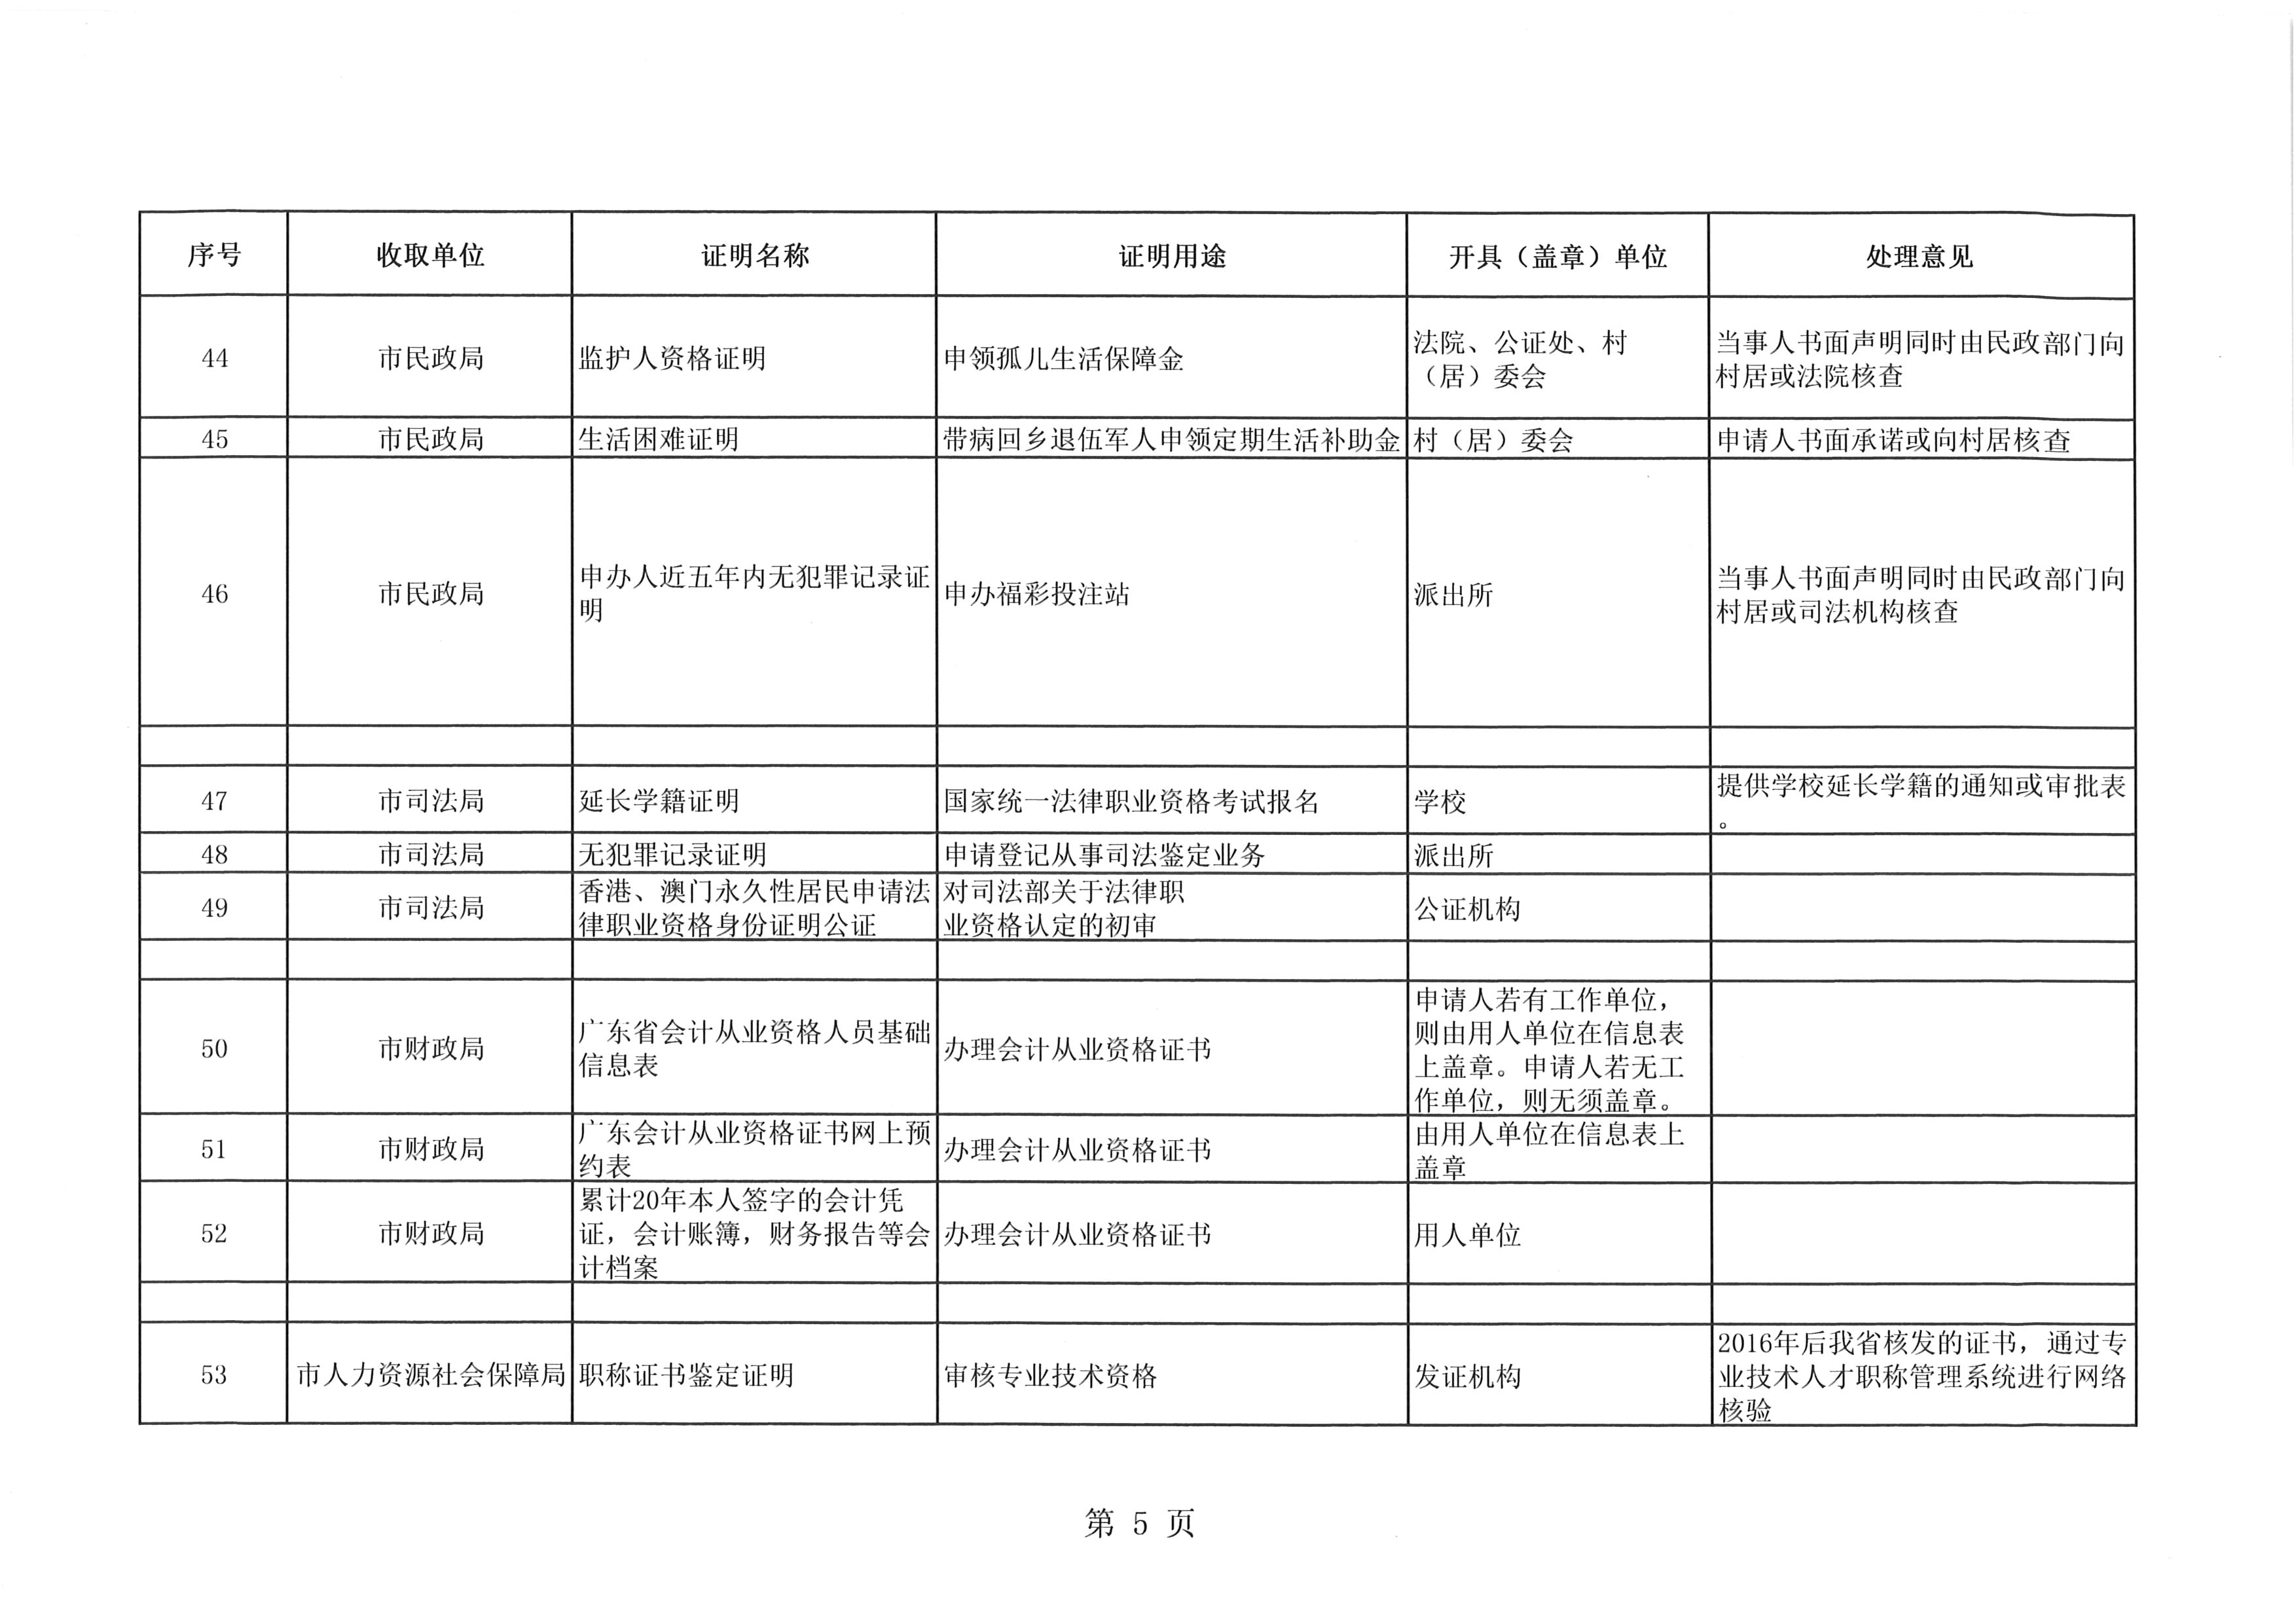 江门市取消的证明事项目录(第二批,149项)